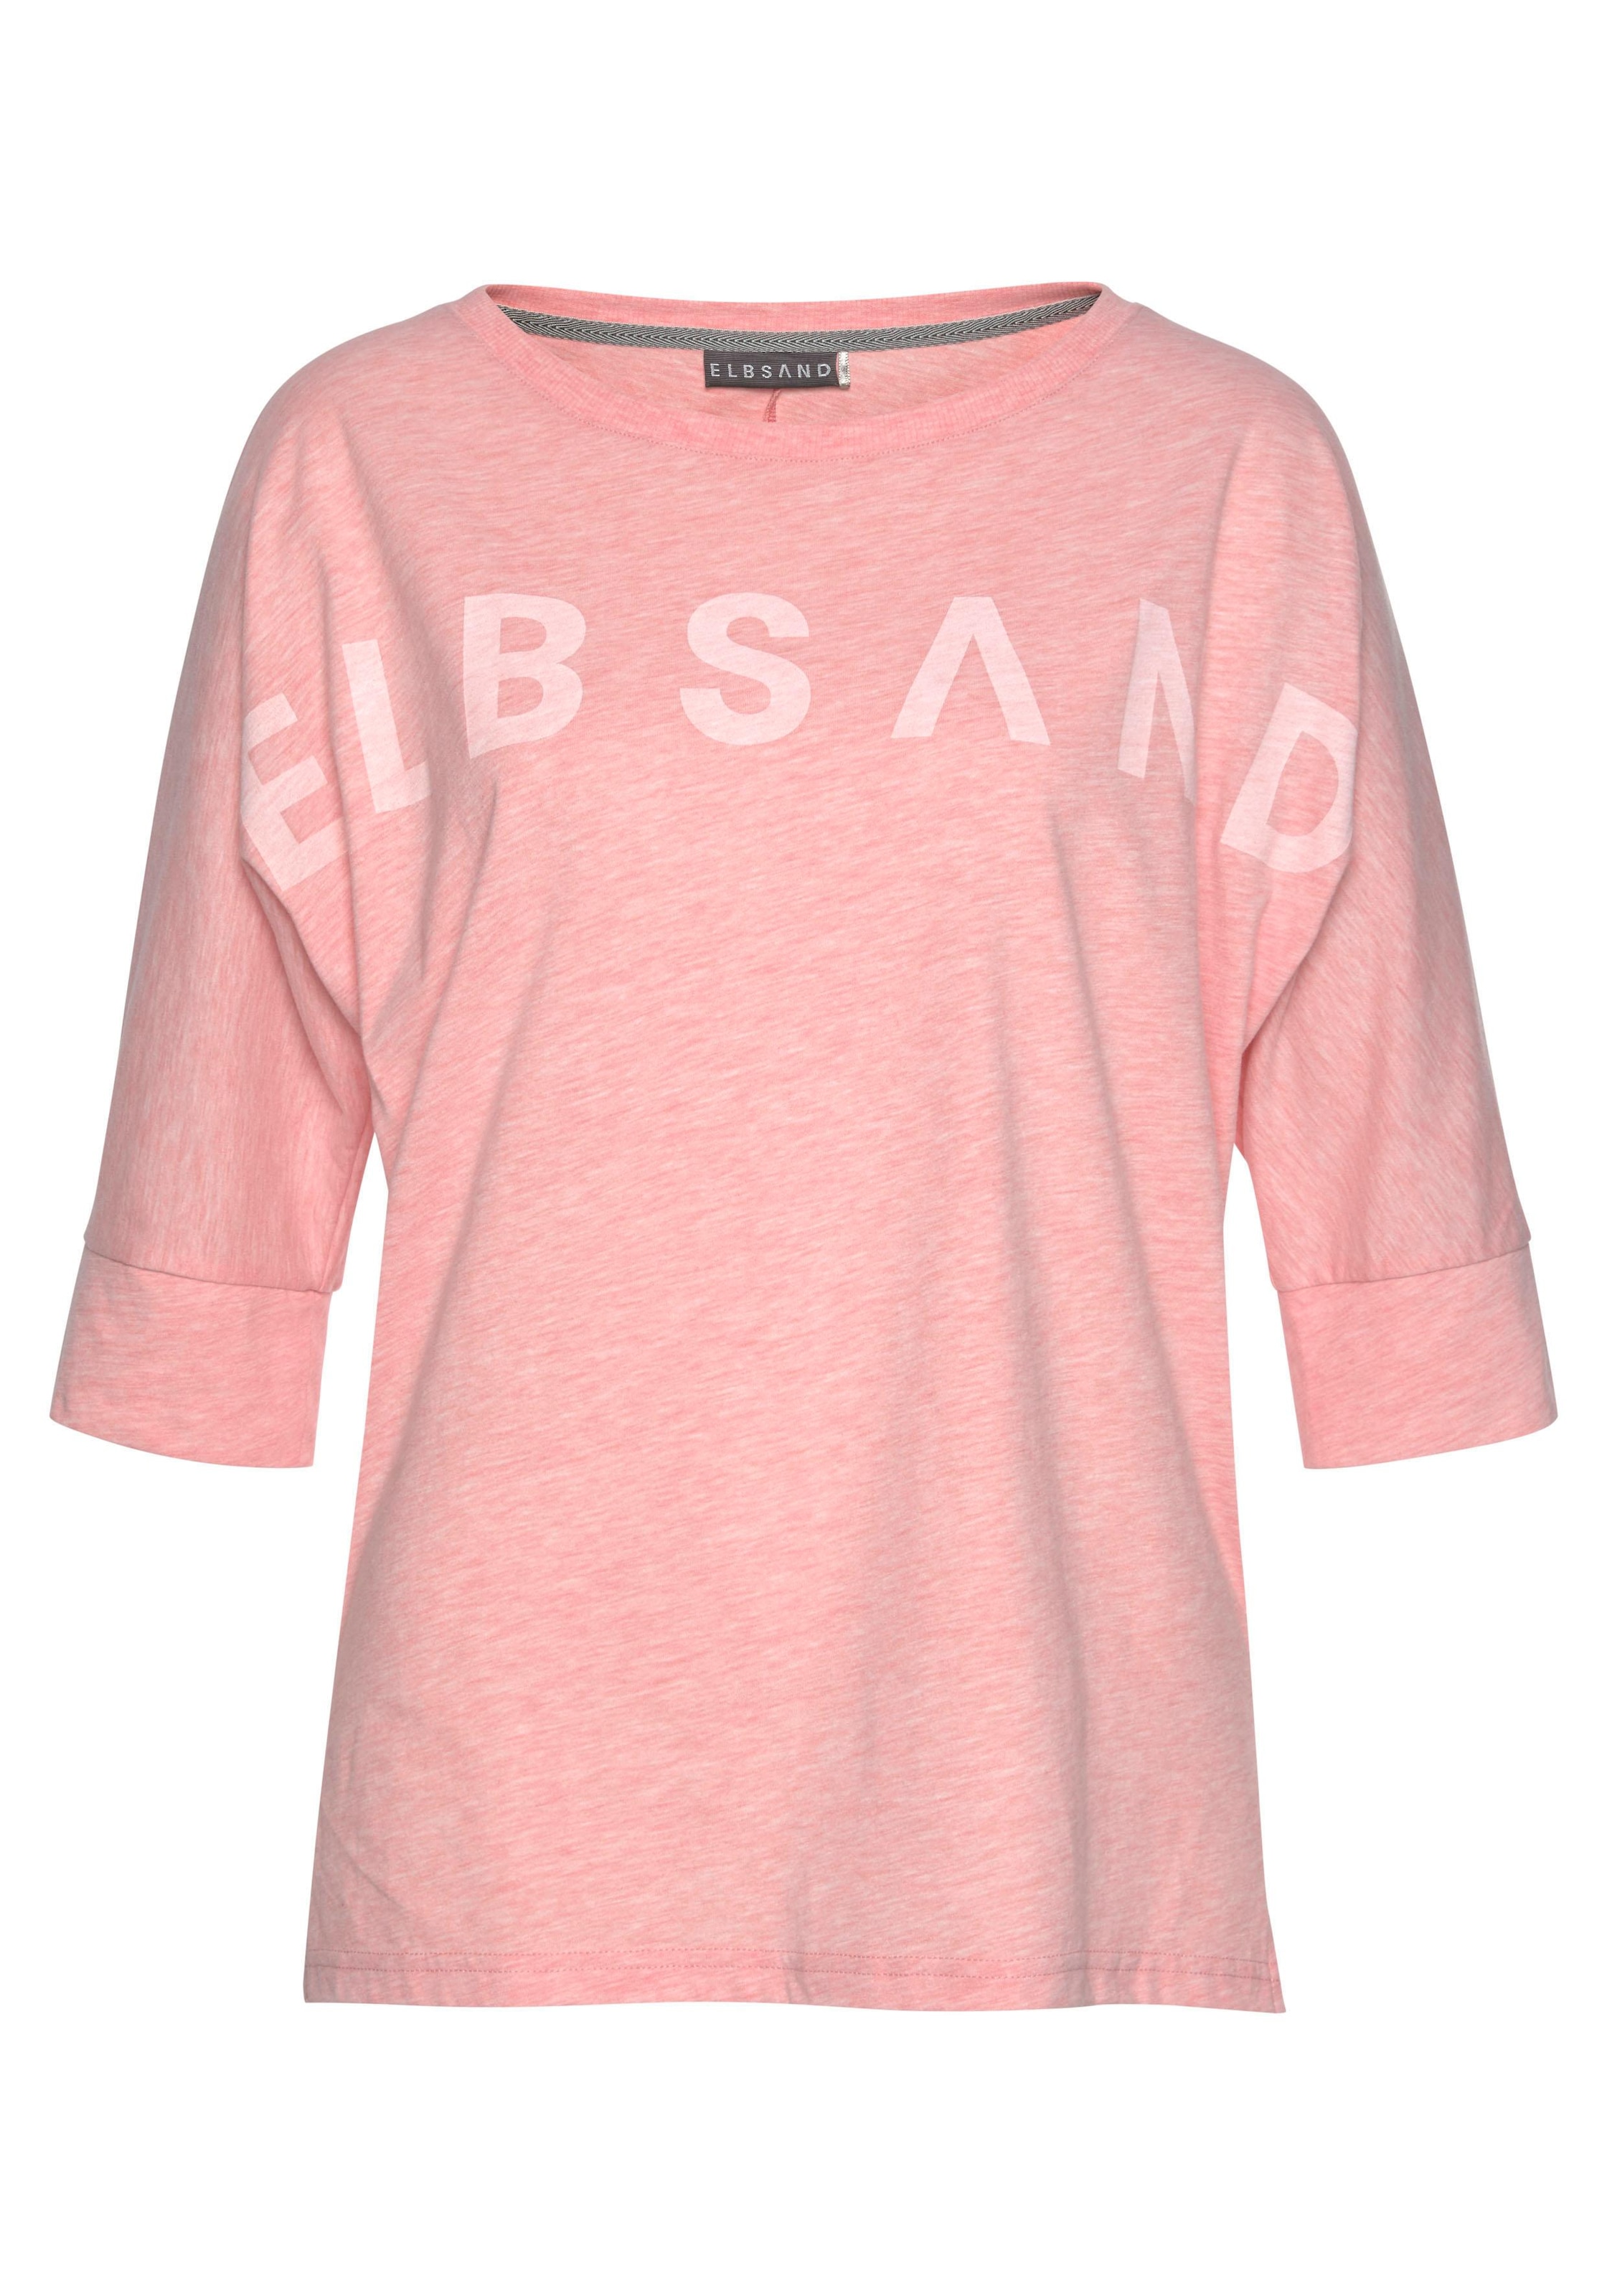 Elbsand 3/4-Arm-Shirt »Iduna«, in Melange-Optik mit Logodruck vorne, Baumwoll-Mix, lockere Passform